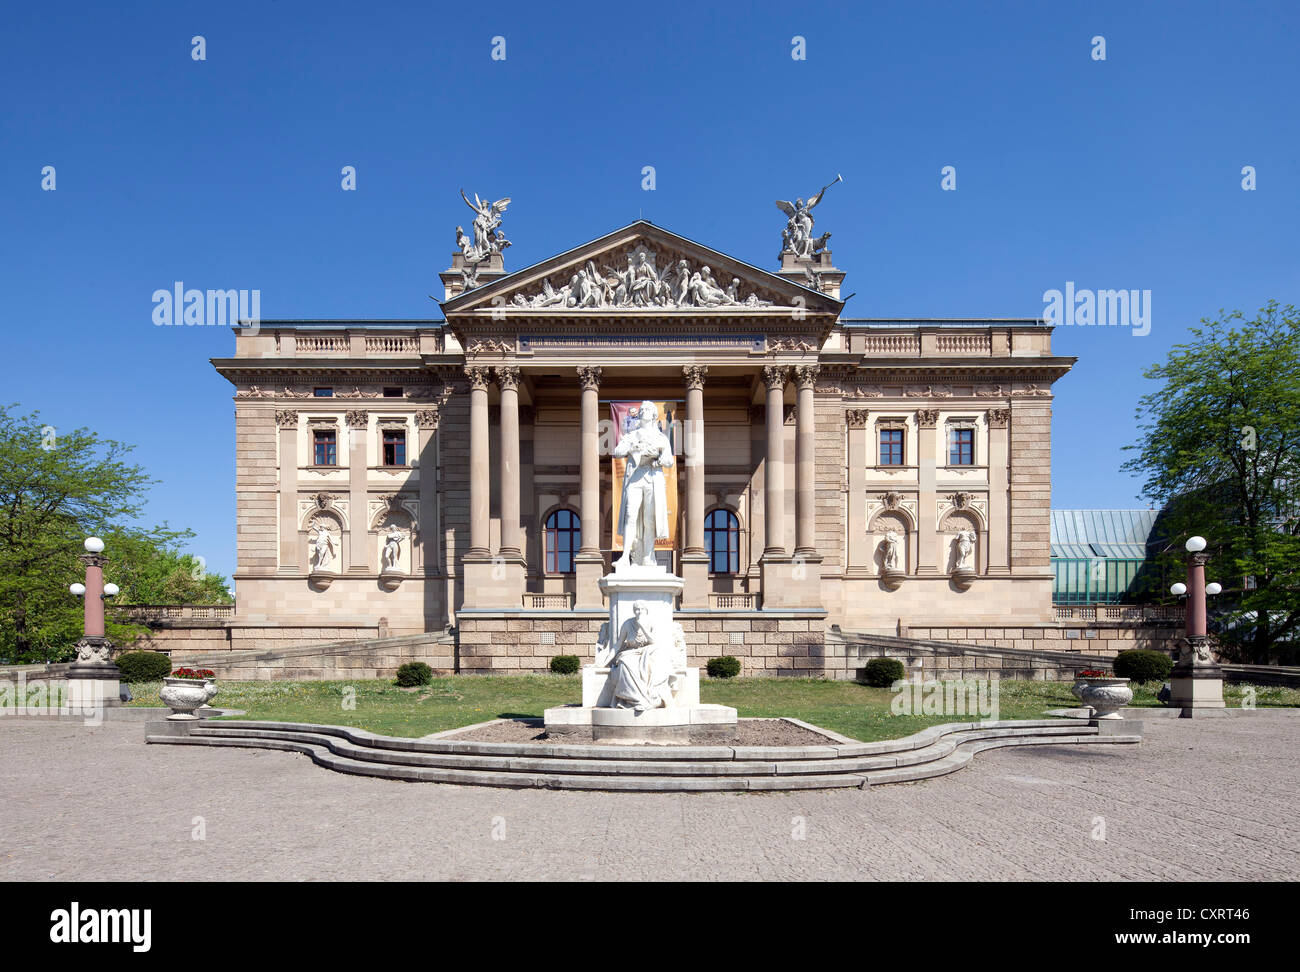 Théâtre d'état de Hesse, ancien théâtre de la Cour royale, Wiesbaden, Hesse, Germany, Europe, PublicGround Banque D'Images